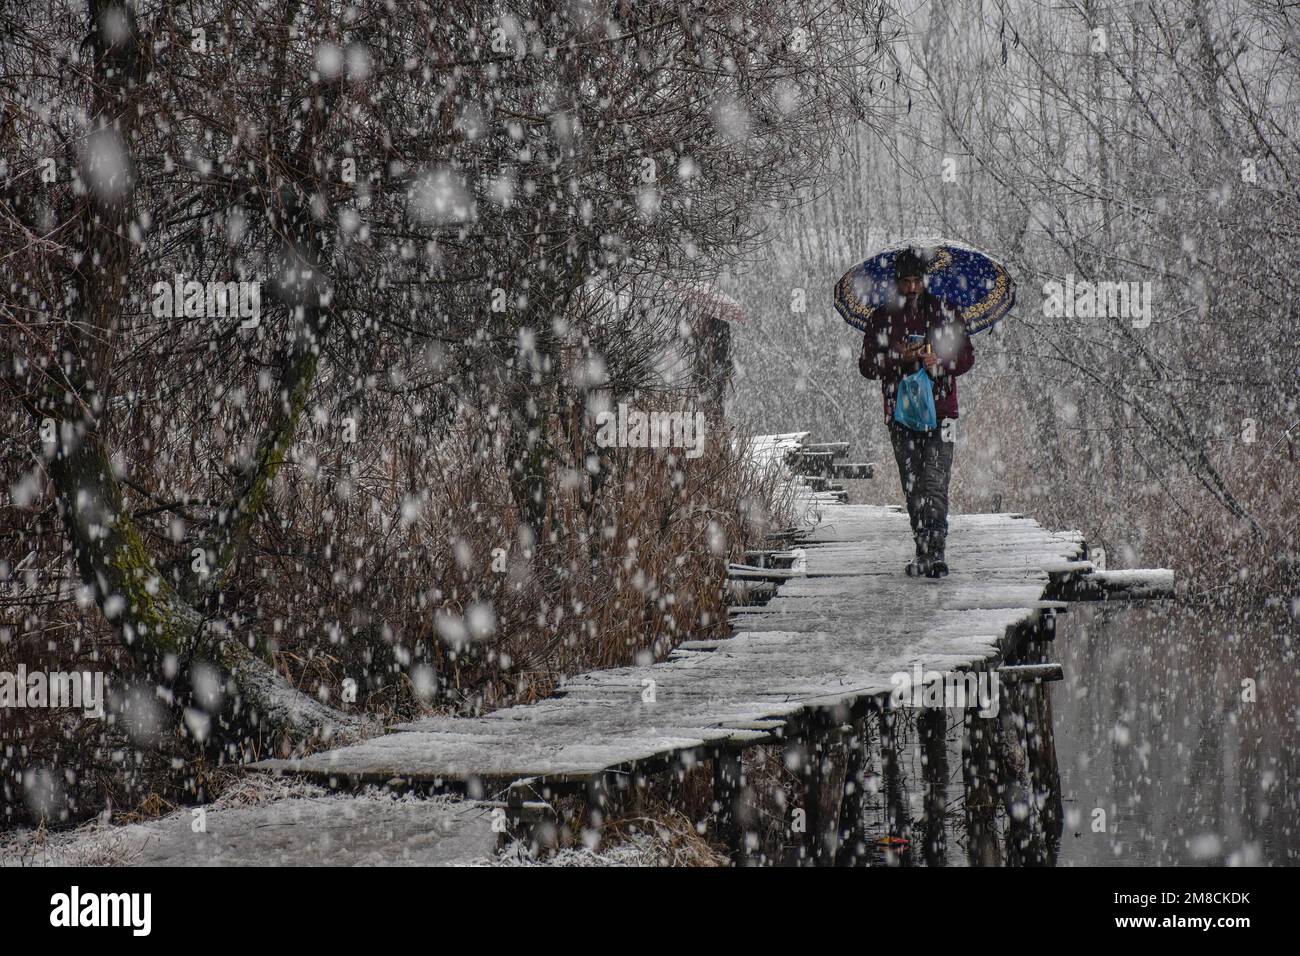 Un uomo tiene un ombrello mentre cammina attraverso il ponte pedonale di legno durante le nevicate. Parti della valle di Kashmir compreso Srinagar ha ricevuto nevicate che portano alla chiusura della vitale Srinagar-Jammu autostrada nazionale e la cancellazione delle operazioni di volo, funzionari qui ha detto. Foto Stock